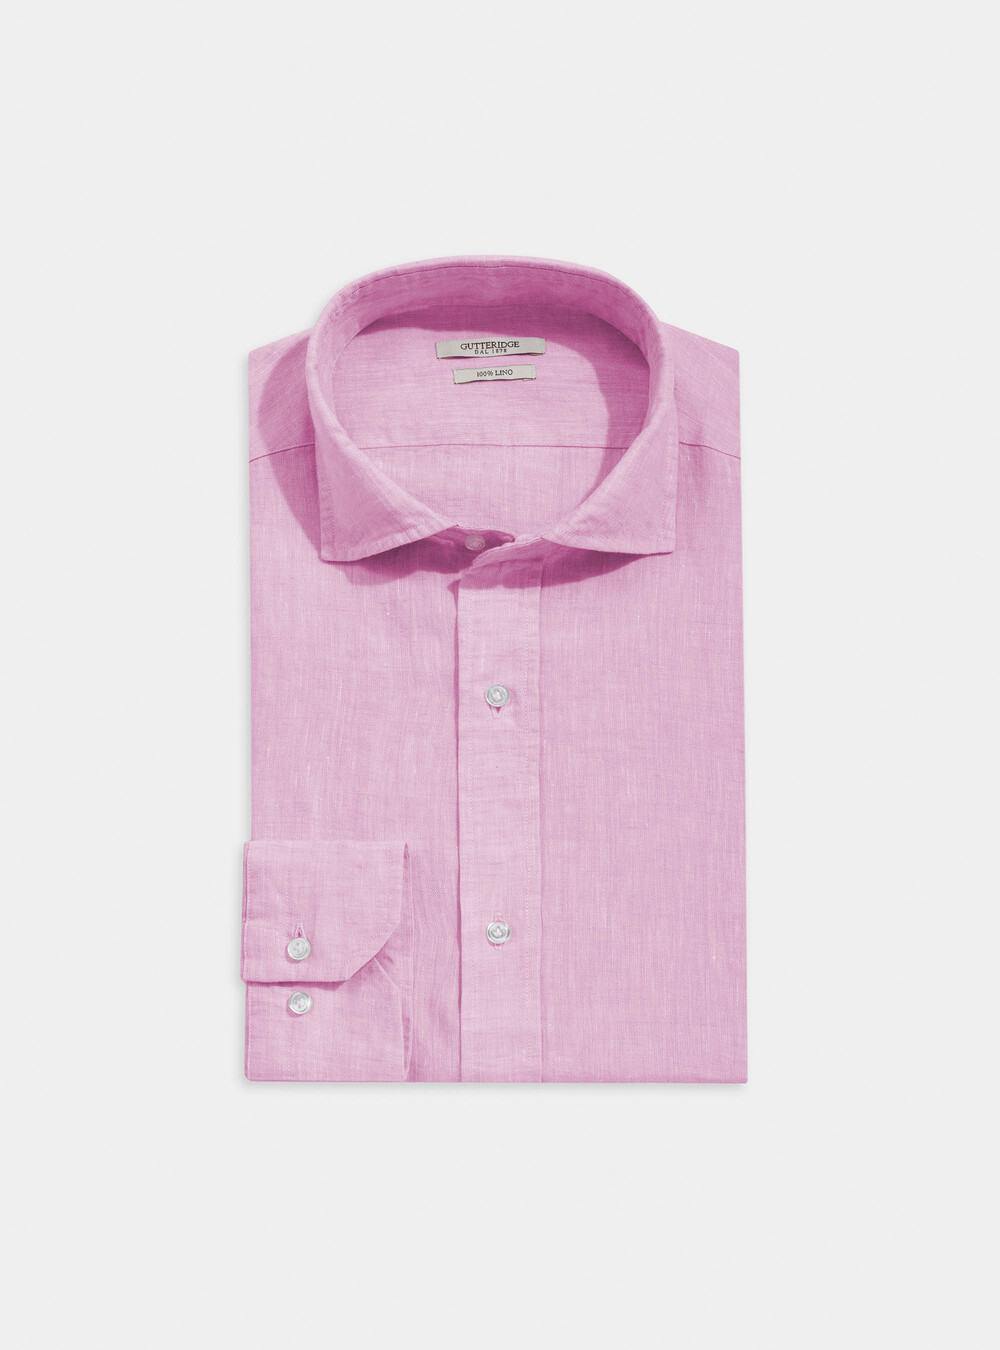 Camicia collo francese semiaperto in lino delavé | Gutteridge | catalog- gutteridge-storefront Uomo